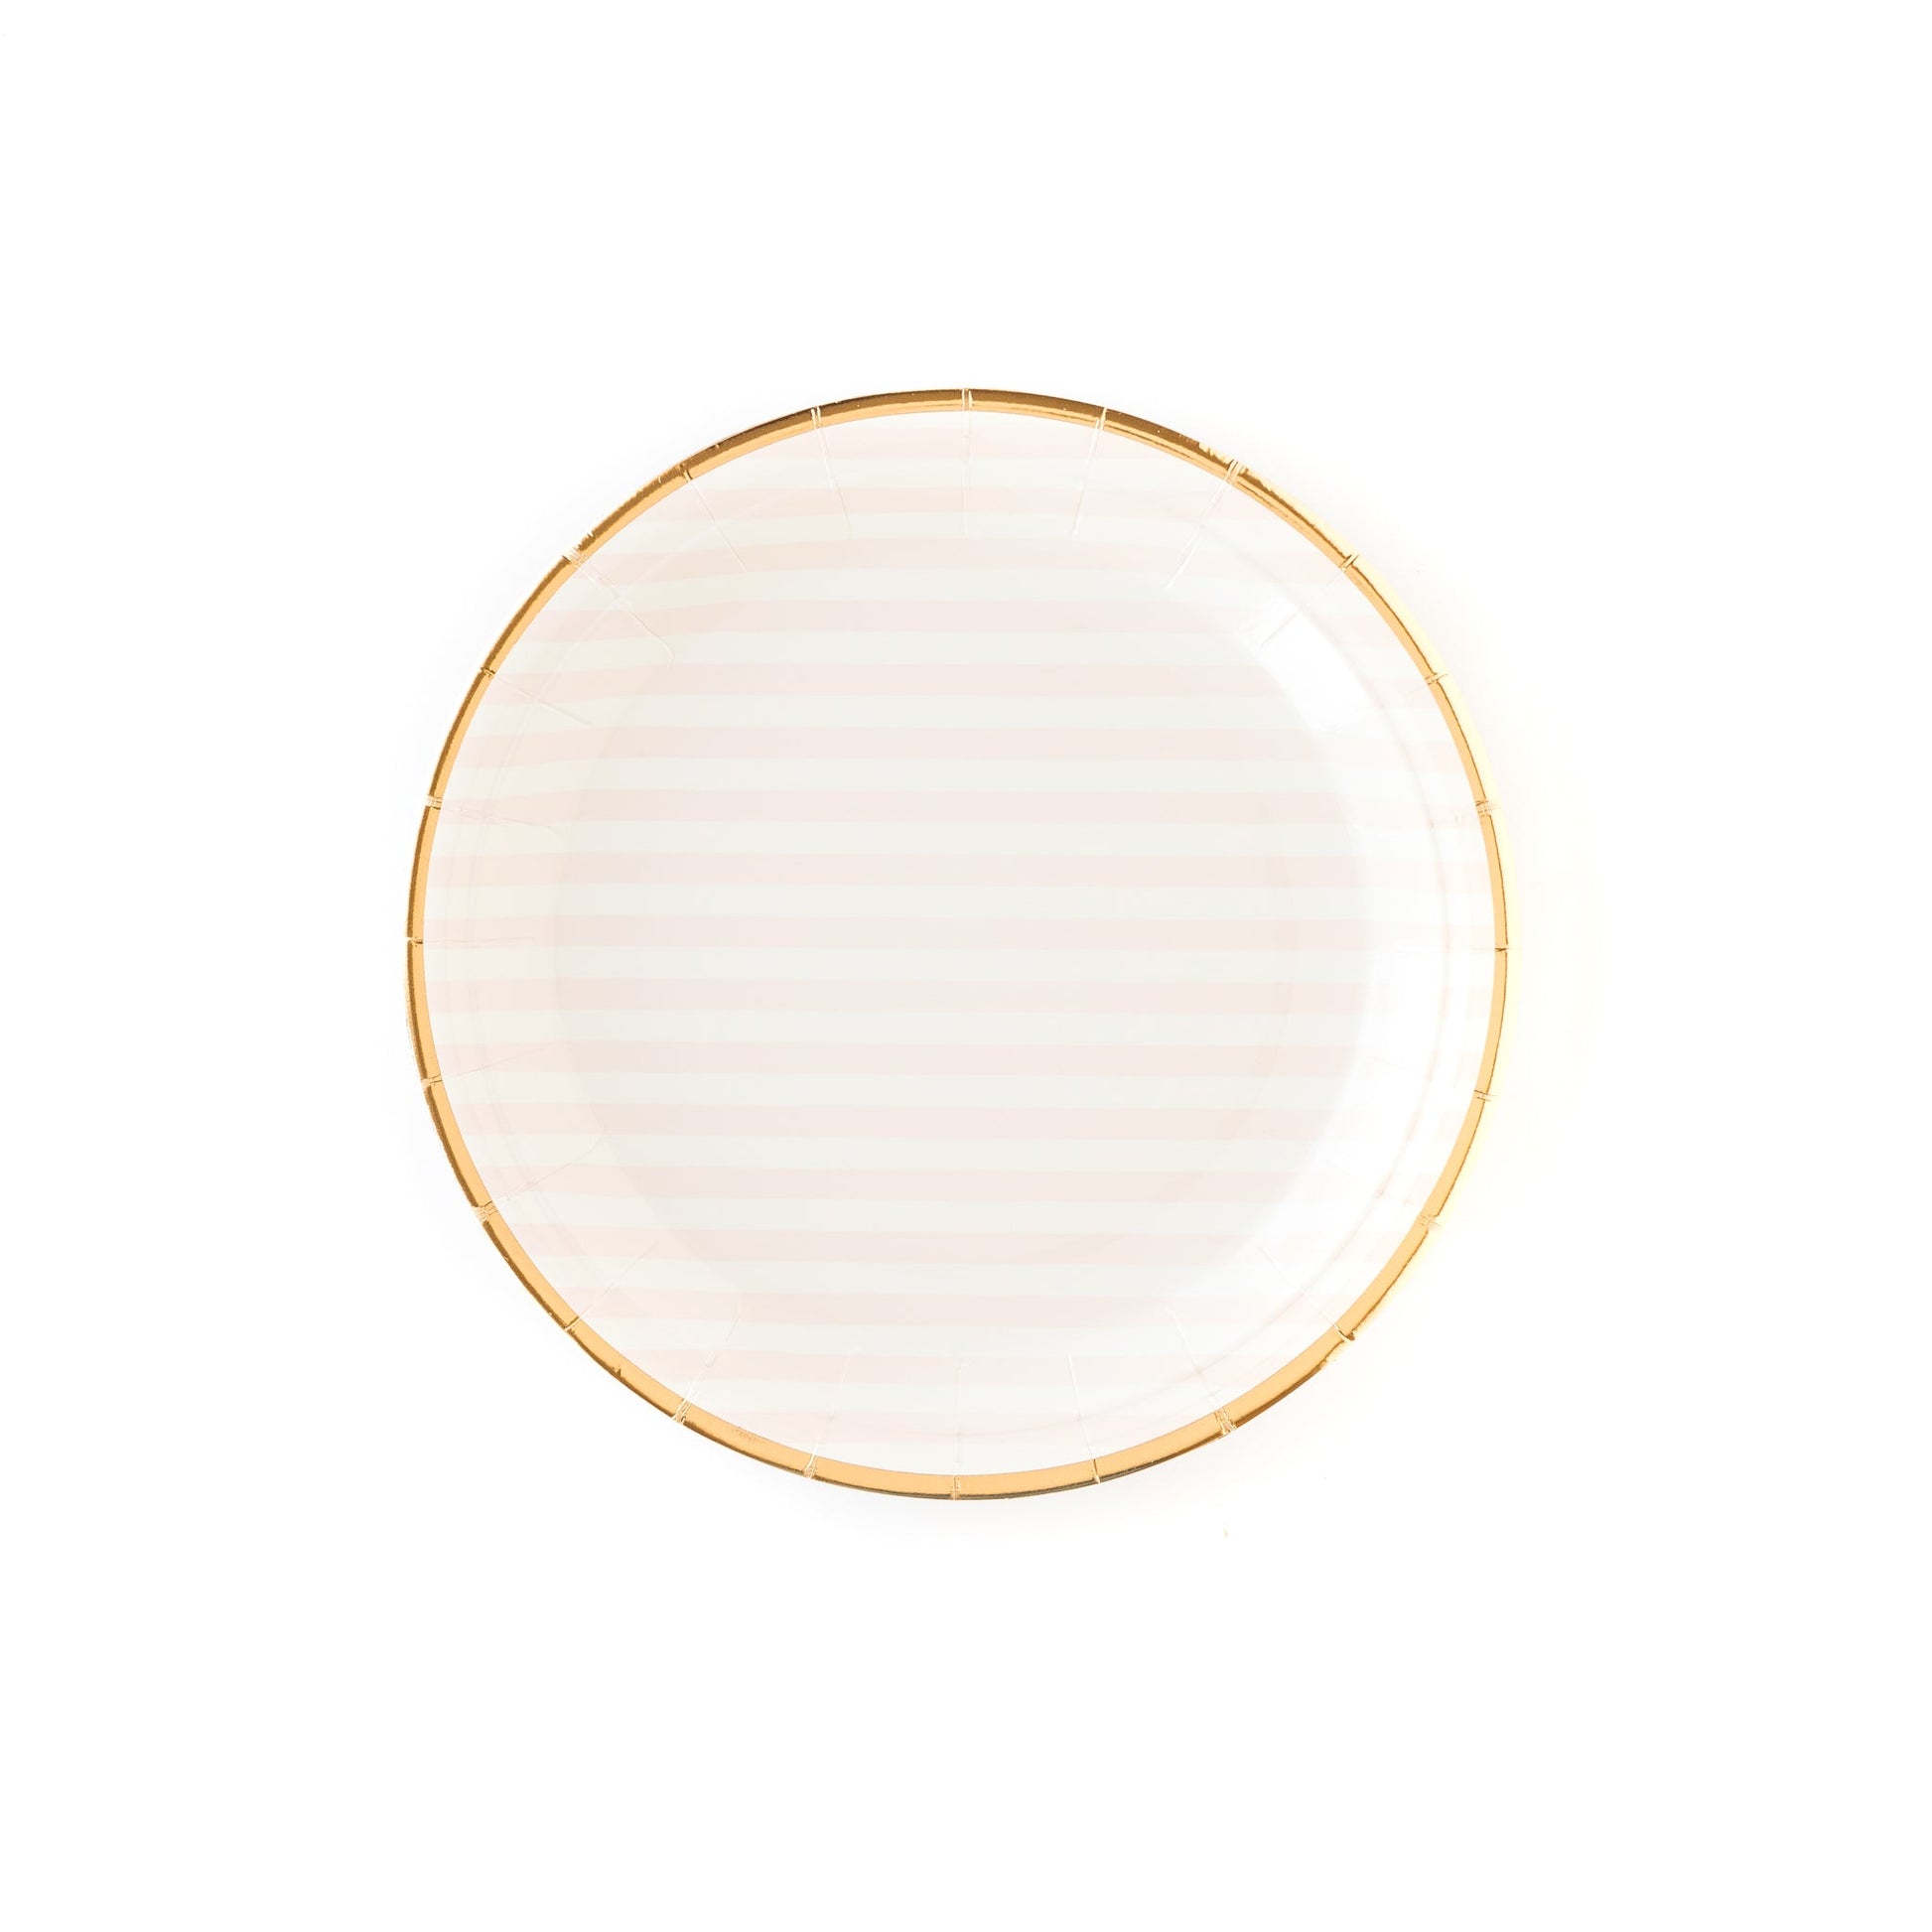 Striped 9" Plates - PaperGeenius